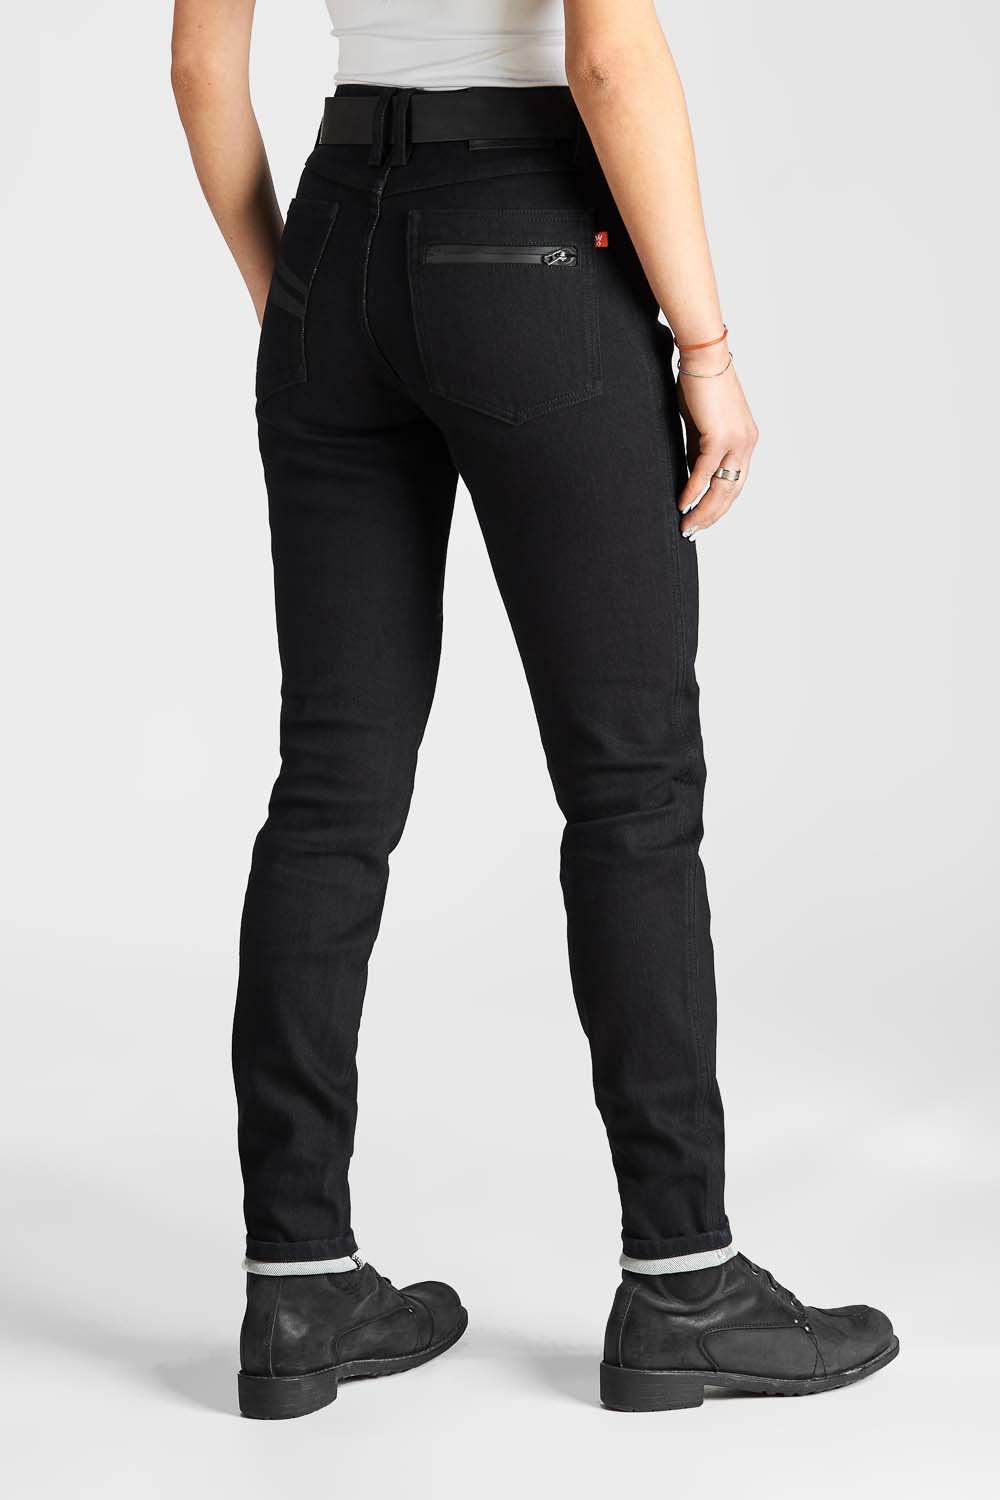 slag middelalderlig Begravelse Moto Jeans for Women Slim-Fit Dyneema® - Kissaki Black | Pando Moto